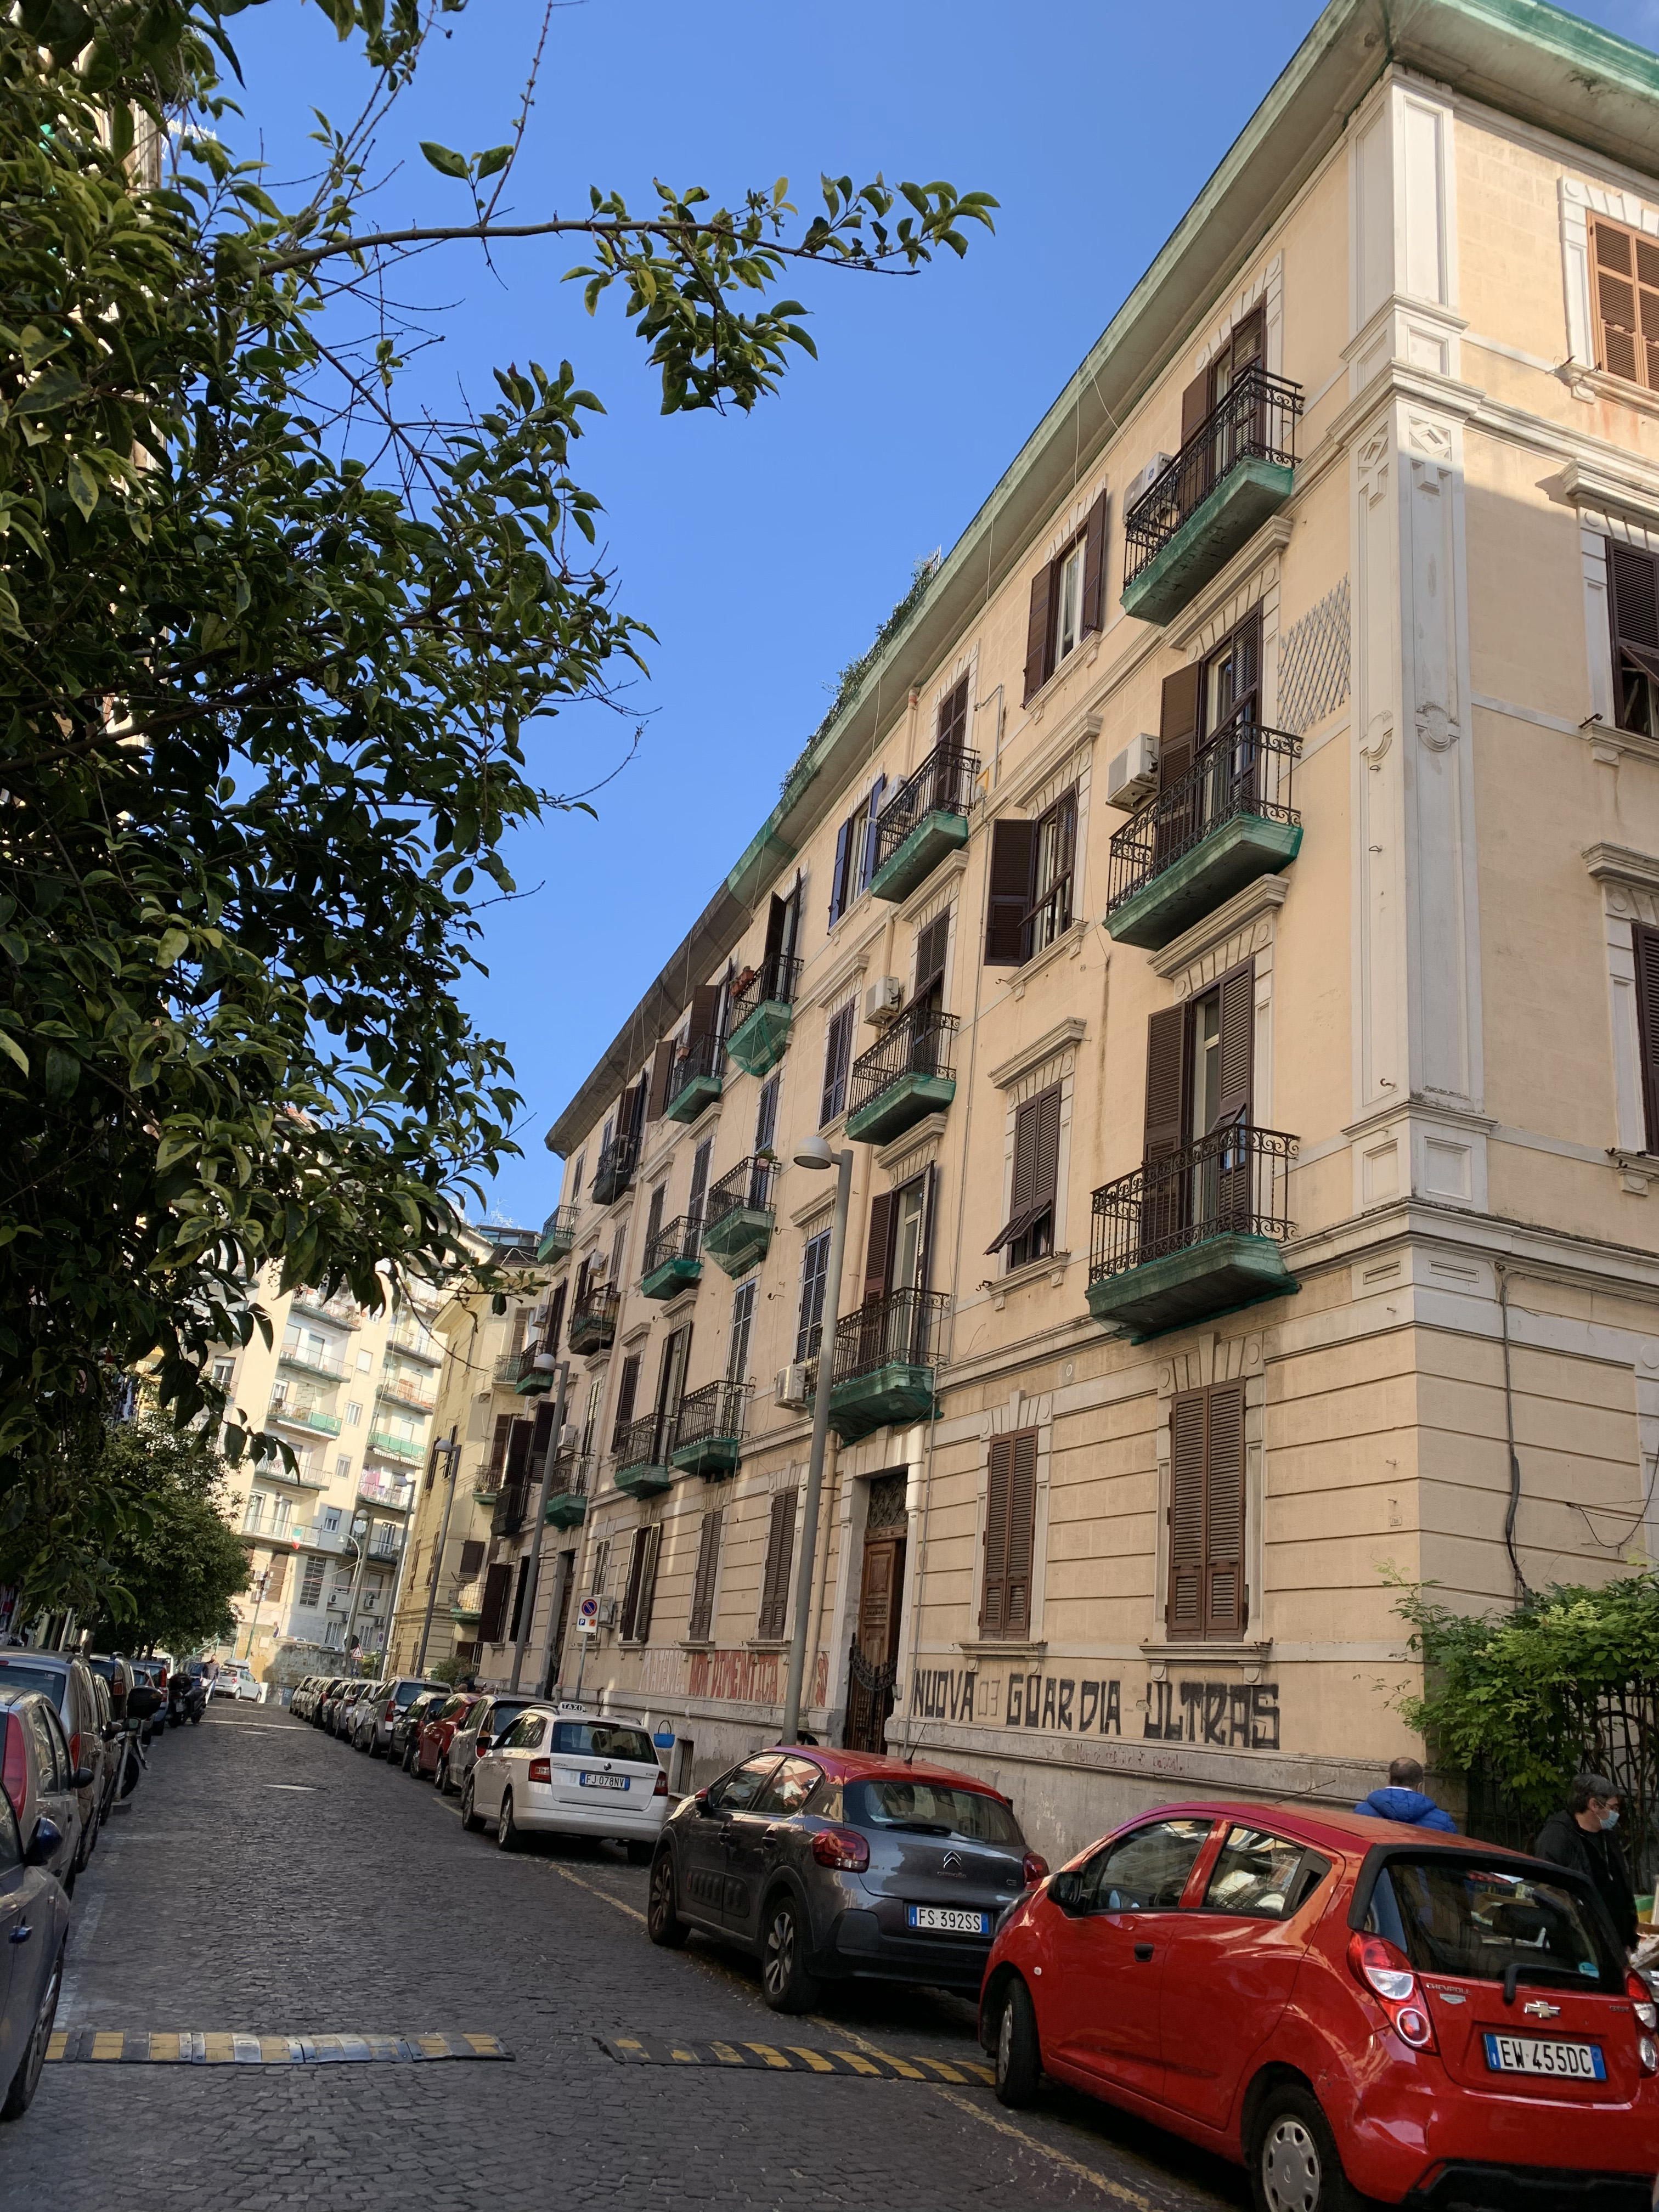 [Palazzo privato in via Francesco Capocelato, 1-3] (palazzo, privato) - Napoli (NA)  (XX)